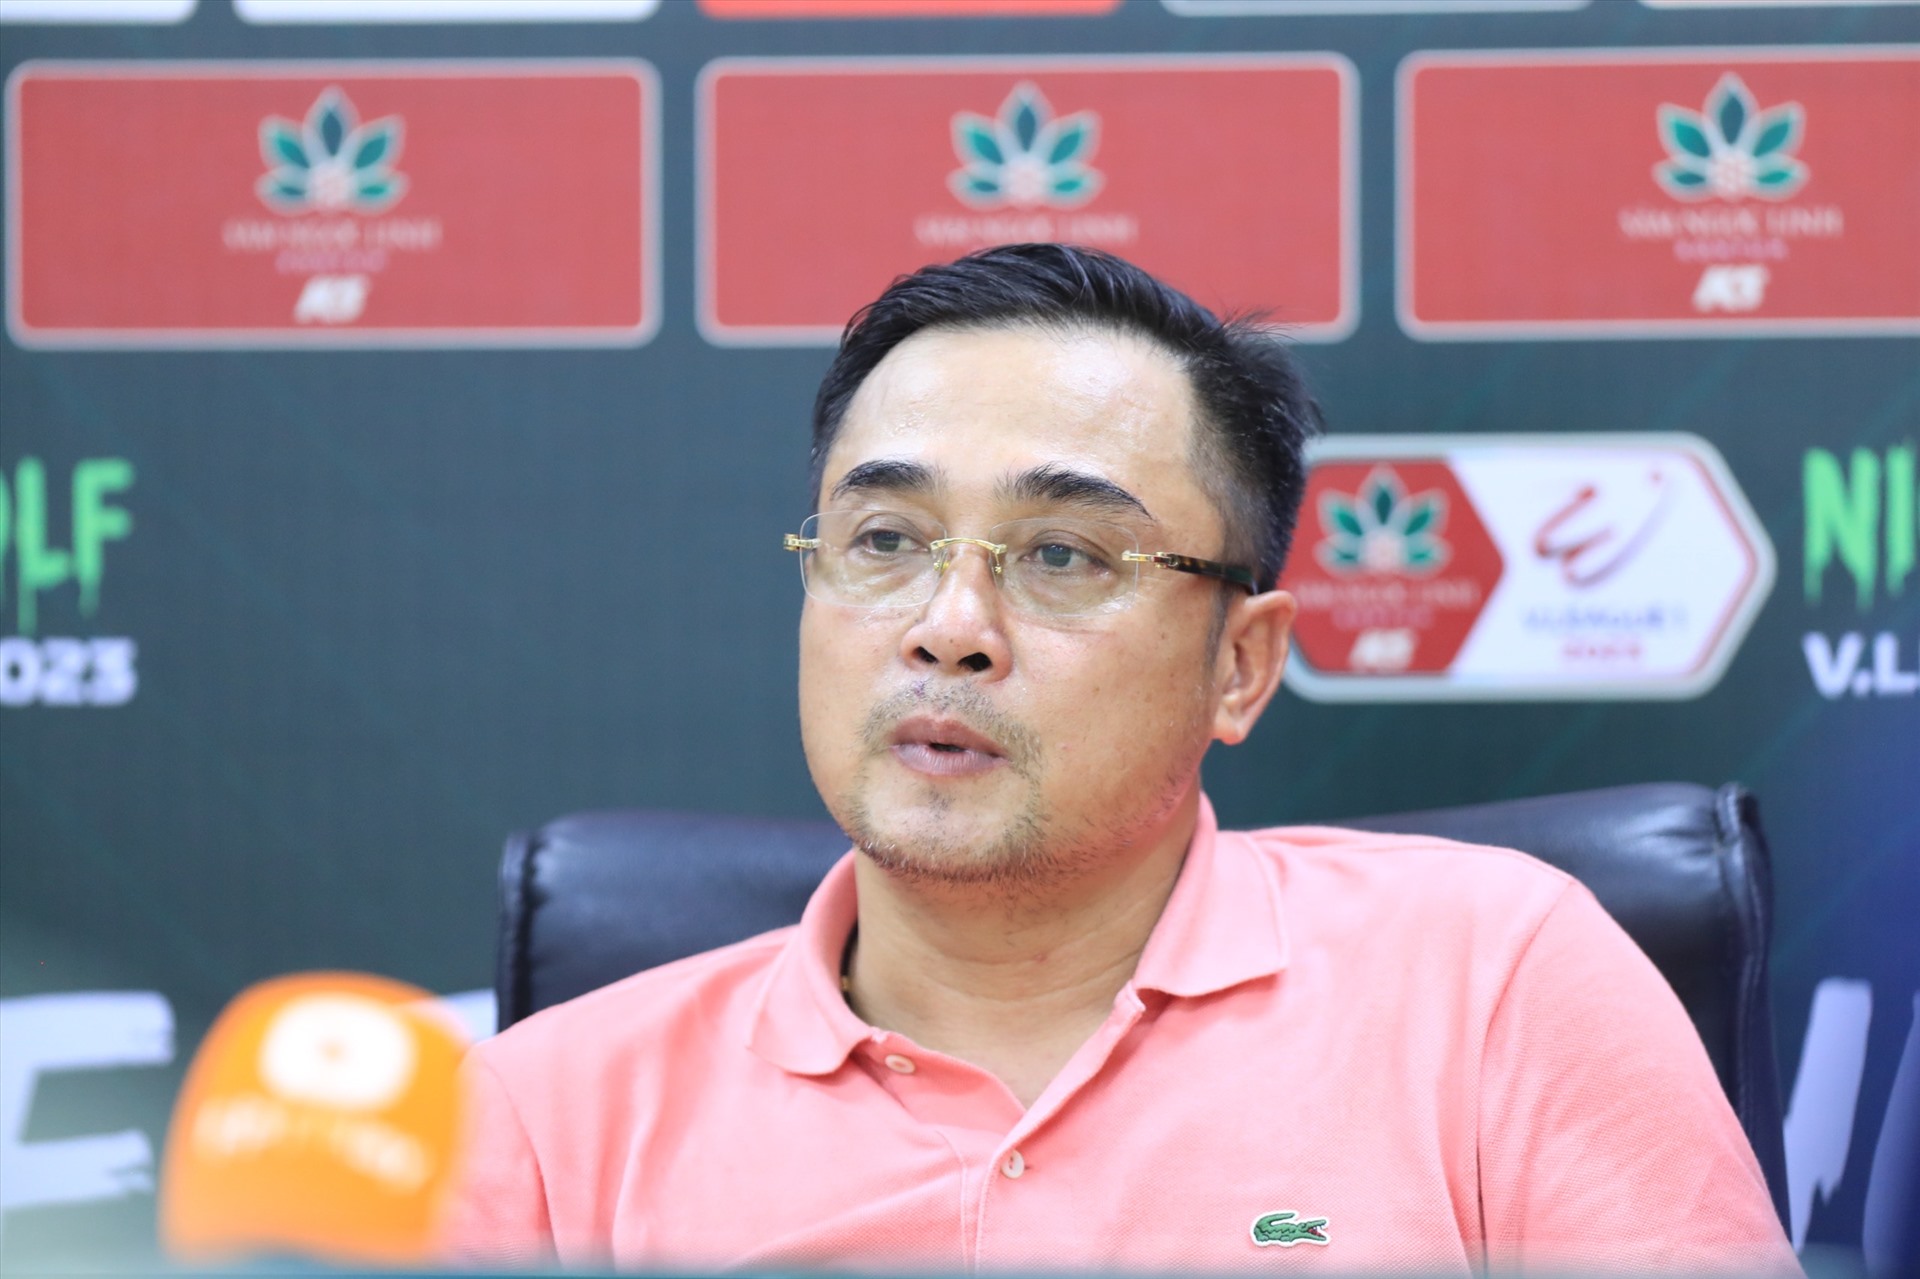 Huấn luyện viên Đức Thắng không hài lòng về quyết định của trọng tài chính trận Hà Nội - Bình Định. Ảnh: Minh Dân